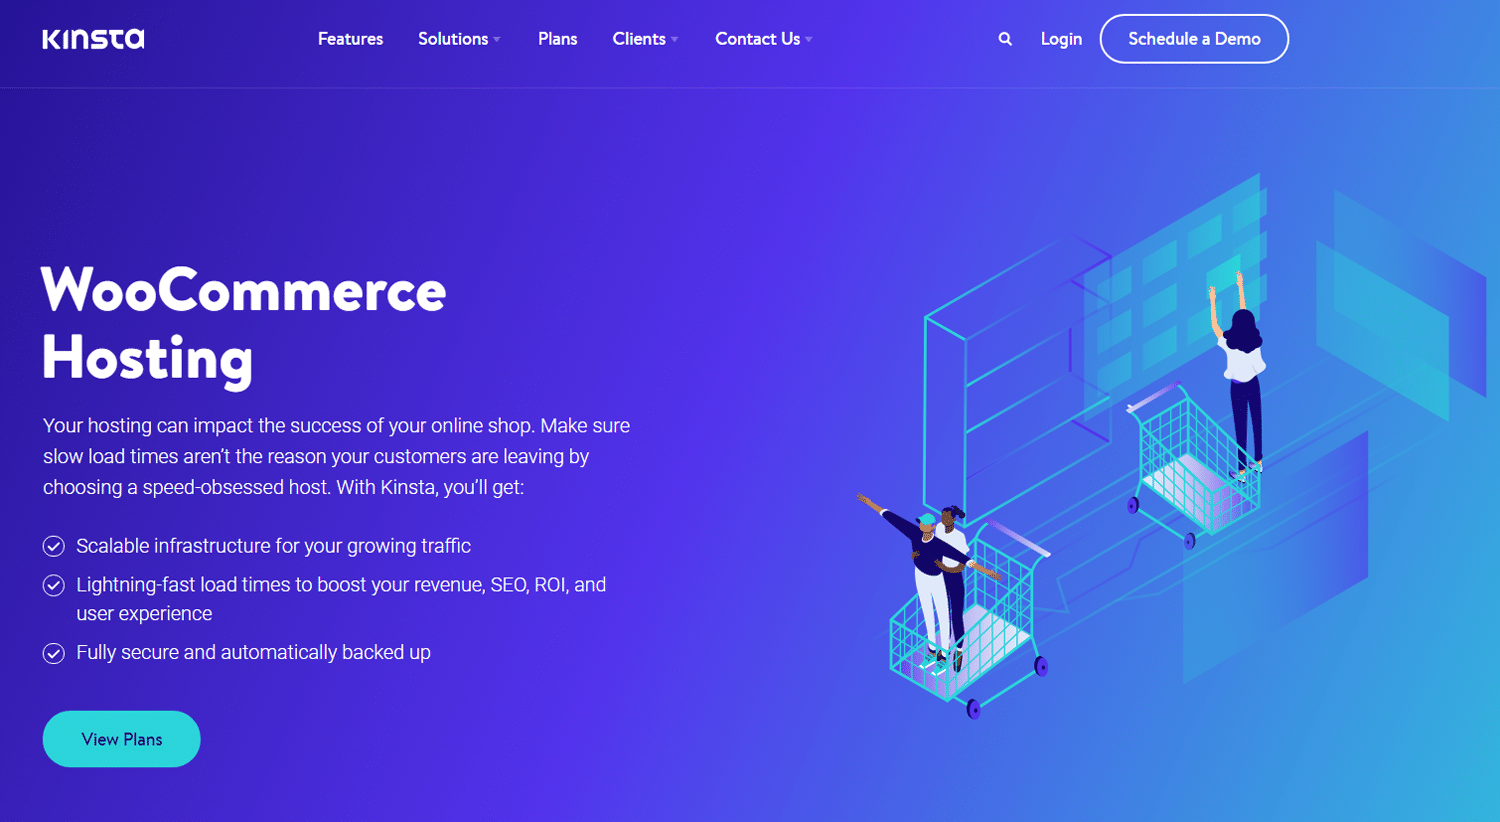 Kinsta's WooCommerce hostingpagina met een illustratie van mensen en winkelwagentjes tegen een blauwe achtergrond.